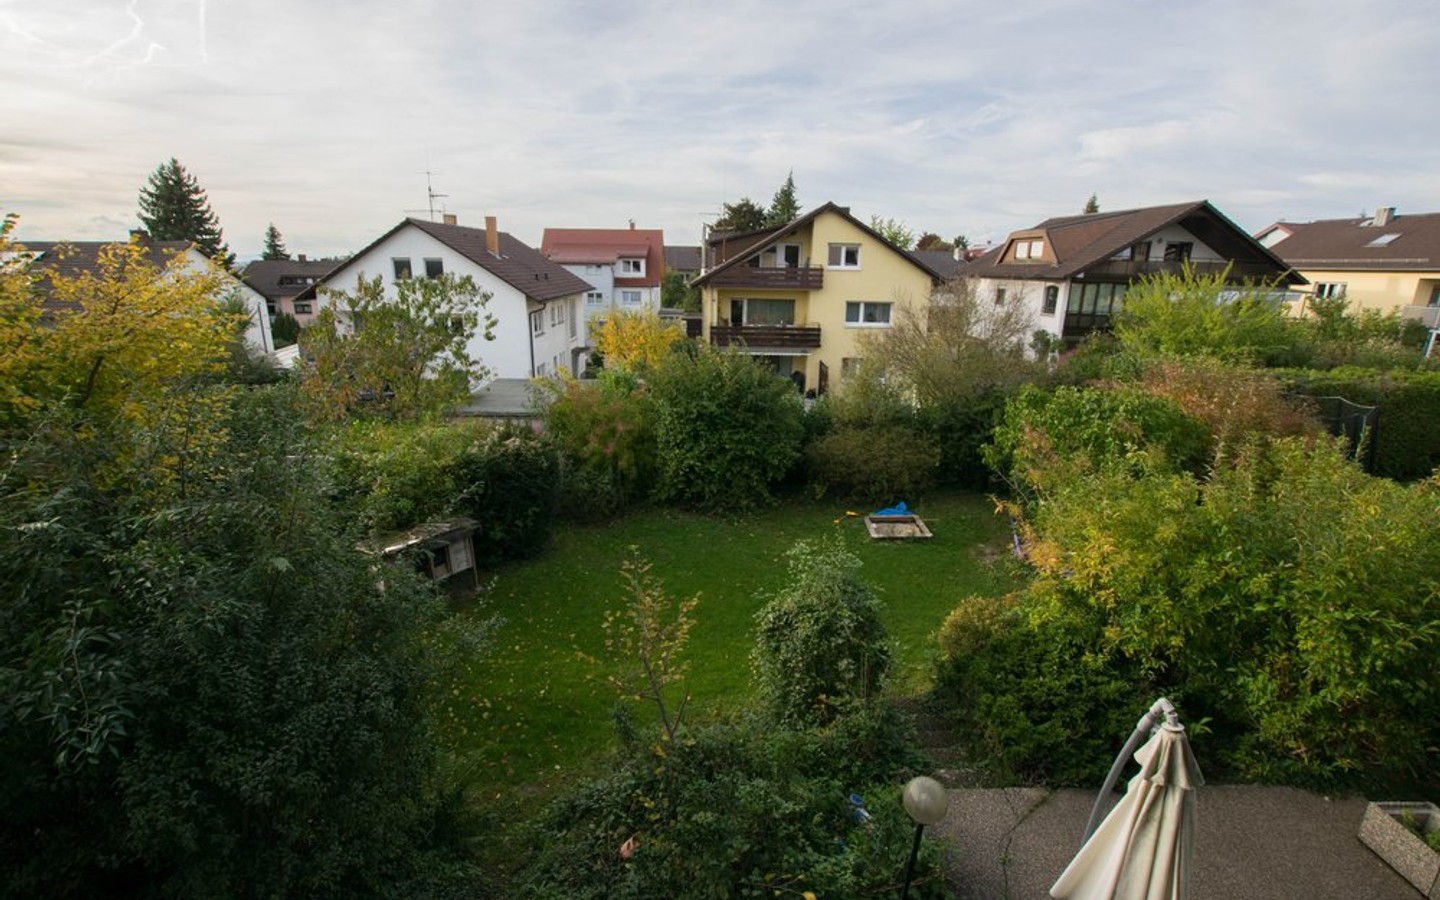 Blick in den Garten - 3-Familienhaus auf großem Grundstück in gewachsener Lage von Wiesloch